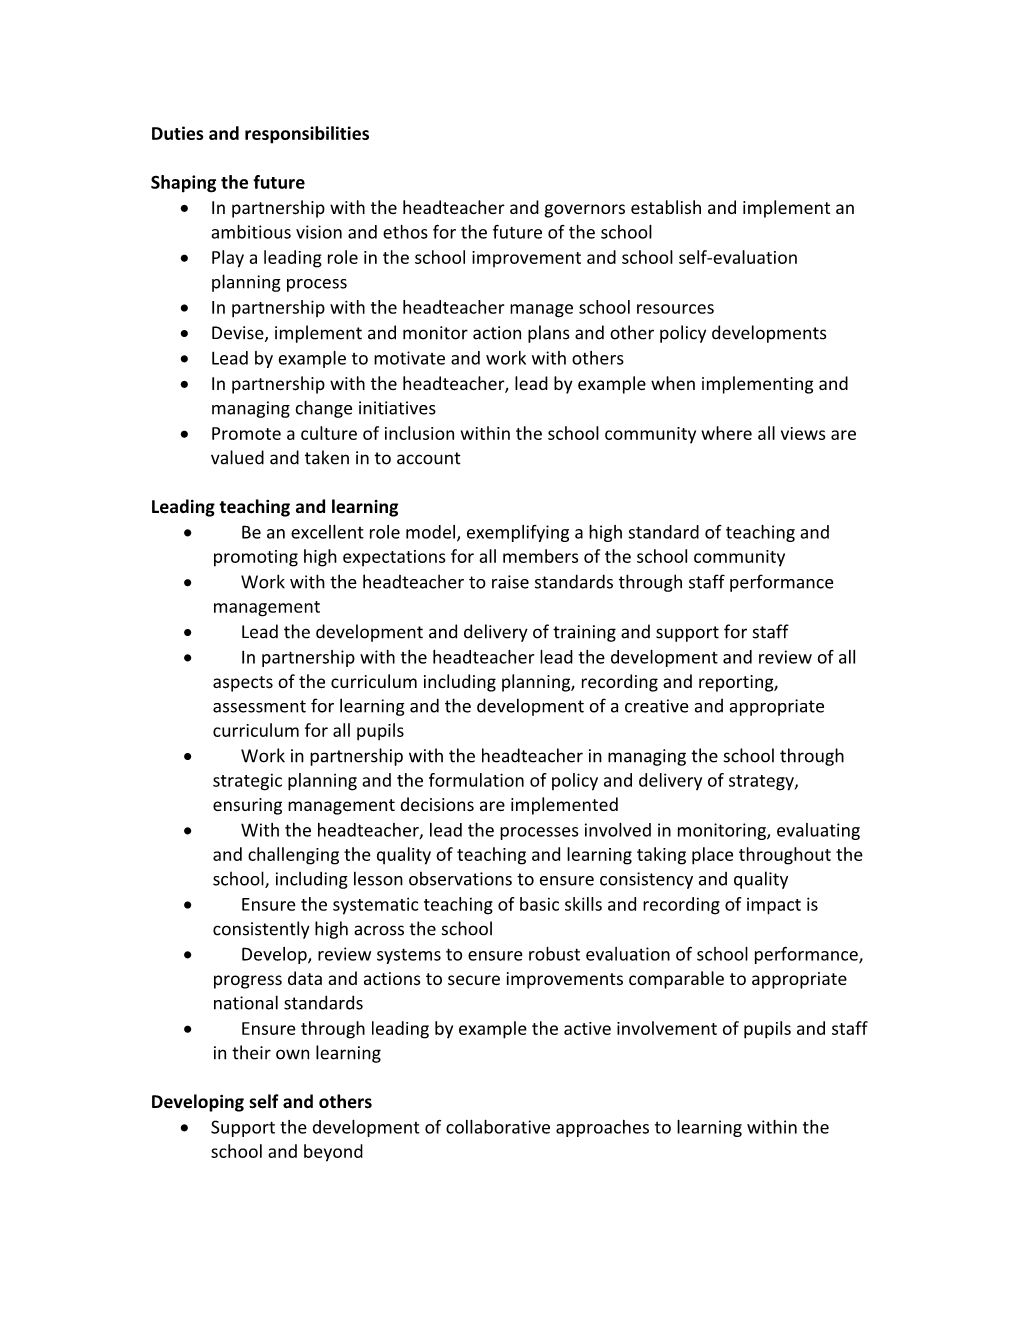 An Example Job Description for a Deputy Headteacher/ Assistant Headteacher